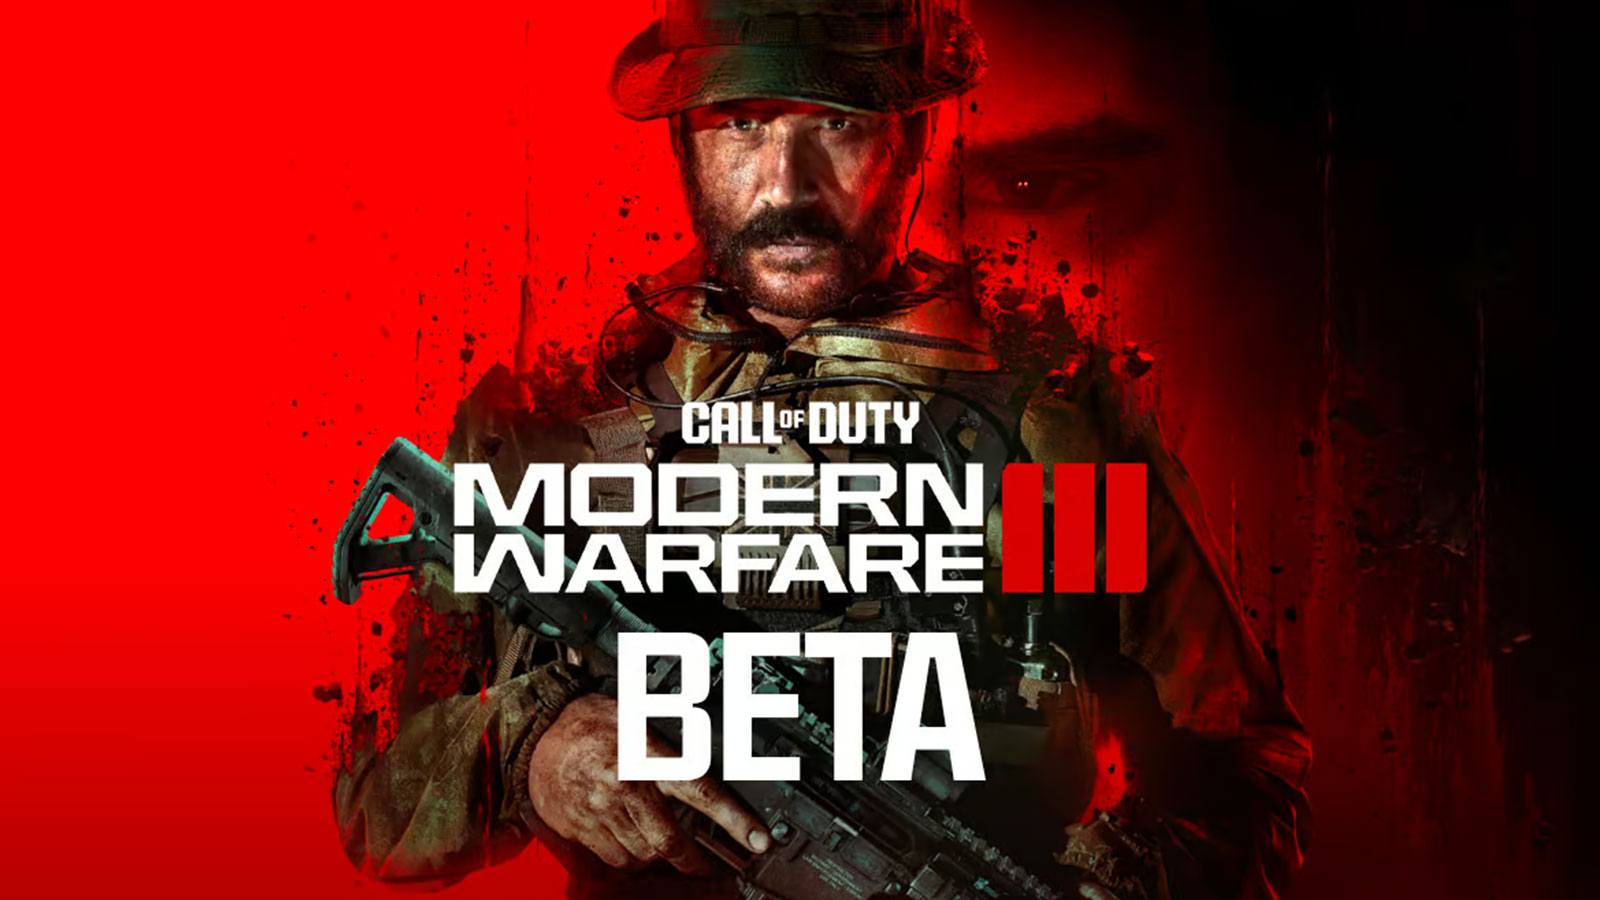 Le nouveau Call of Duty Modern Warfare 3 est disponible en précommande